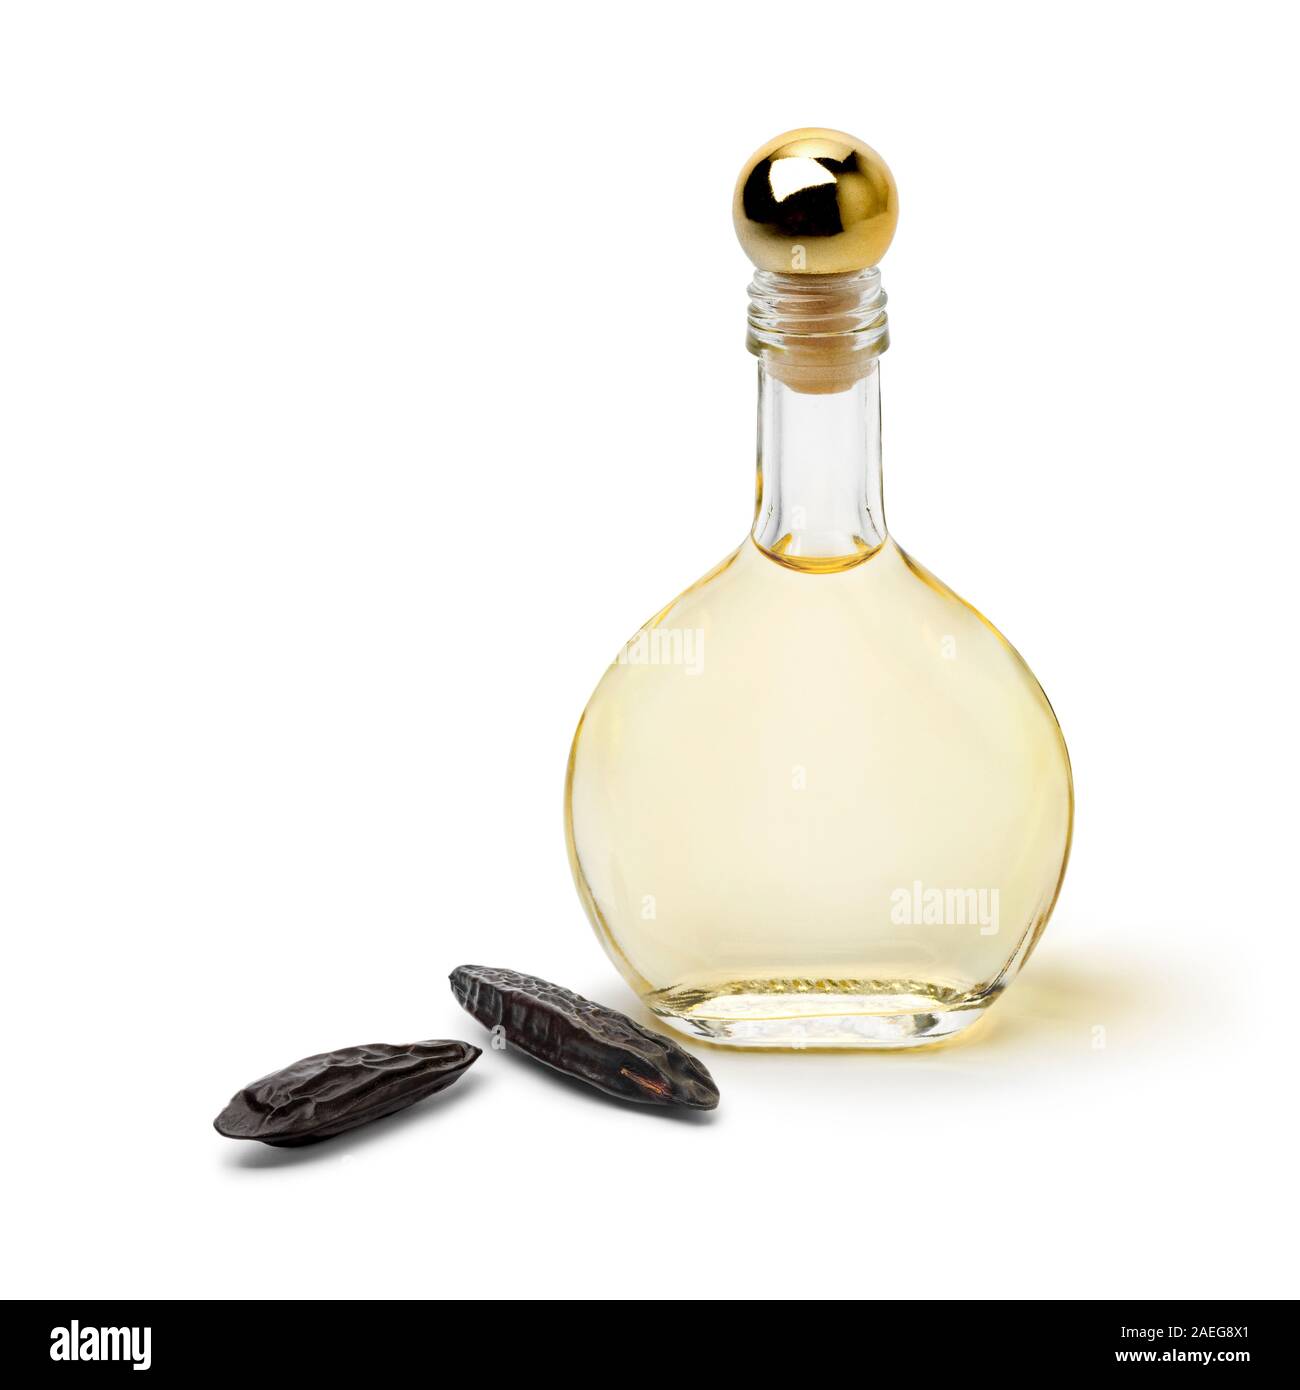 Bouteille de parfum avec l'essence de fèves tonka isolé sur fond blanc Banque D'Images